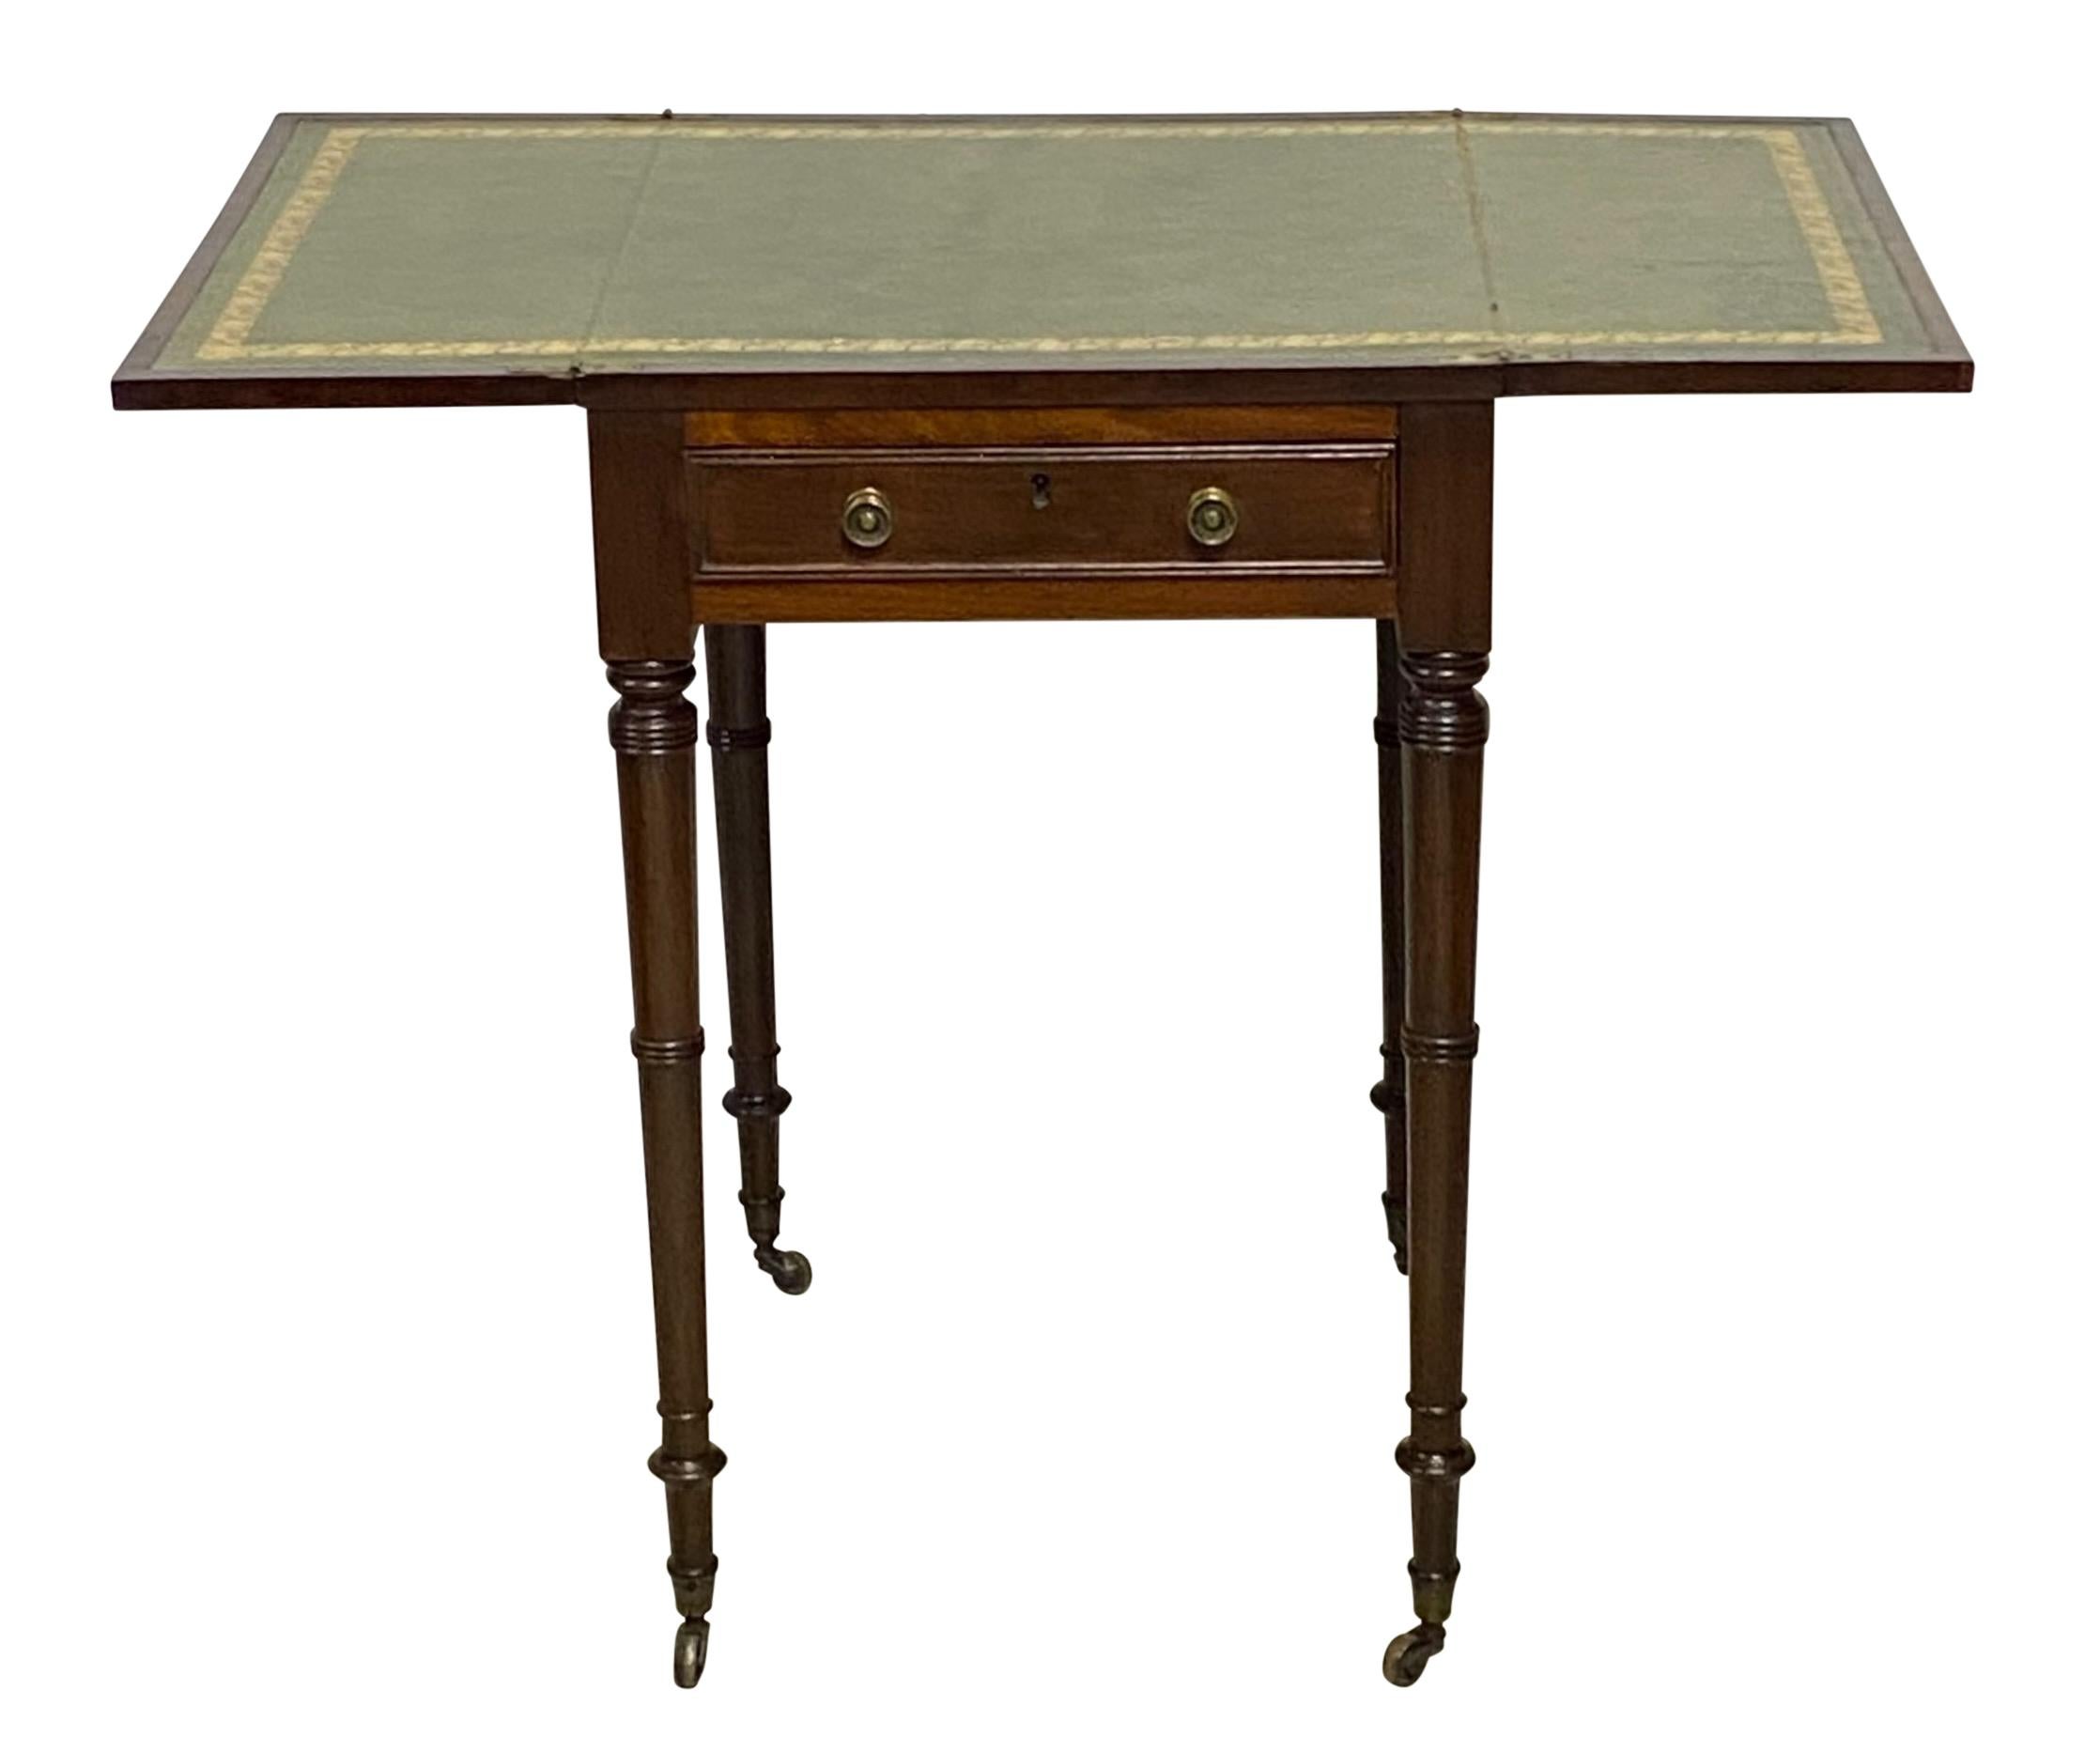 Eine gute Regency-Periode Mahagoni klappbar Arbeit / Beistelltisch mit eingefügten zuckerhaltigen Lederoberfläche.
England, Anfang des 19. Jahrhunderts.
Wenn der Tisch geöffnet ist, misst die Breite 35,5 Zoll.
 